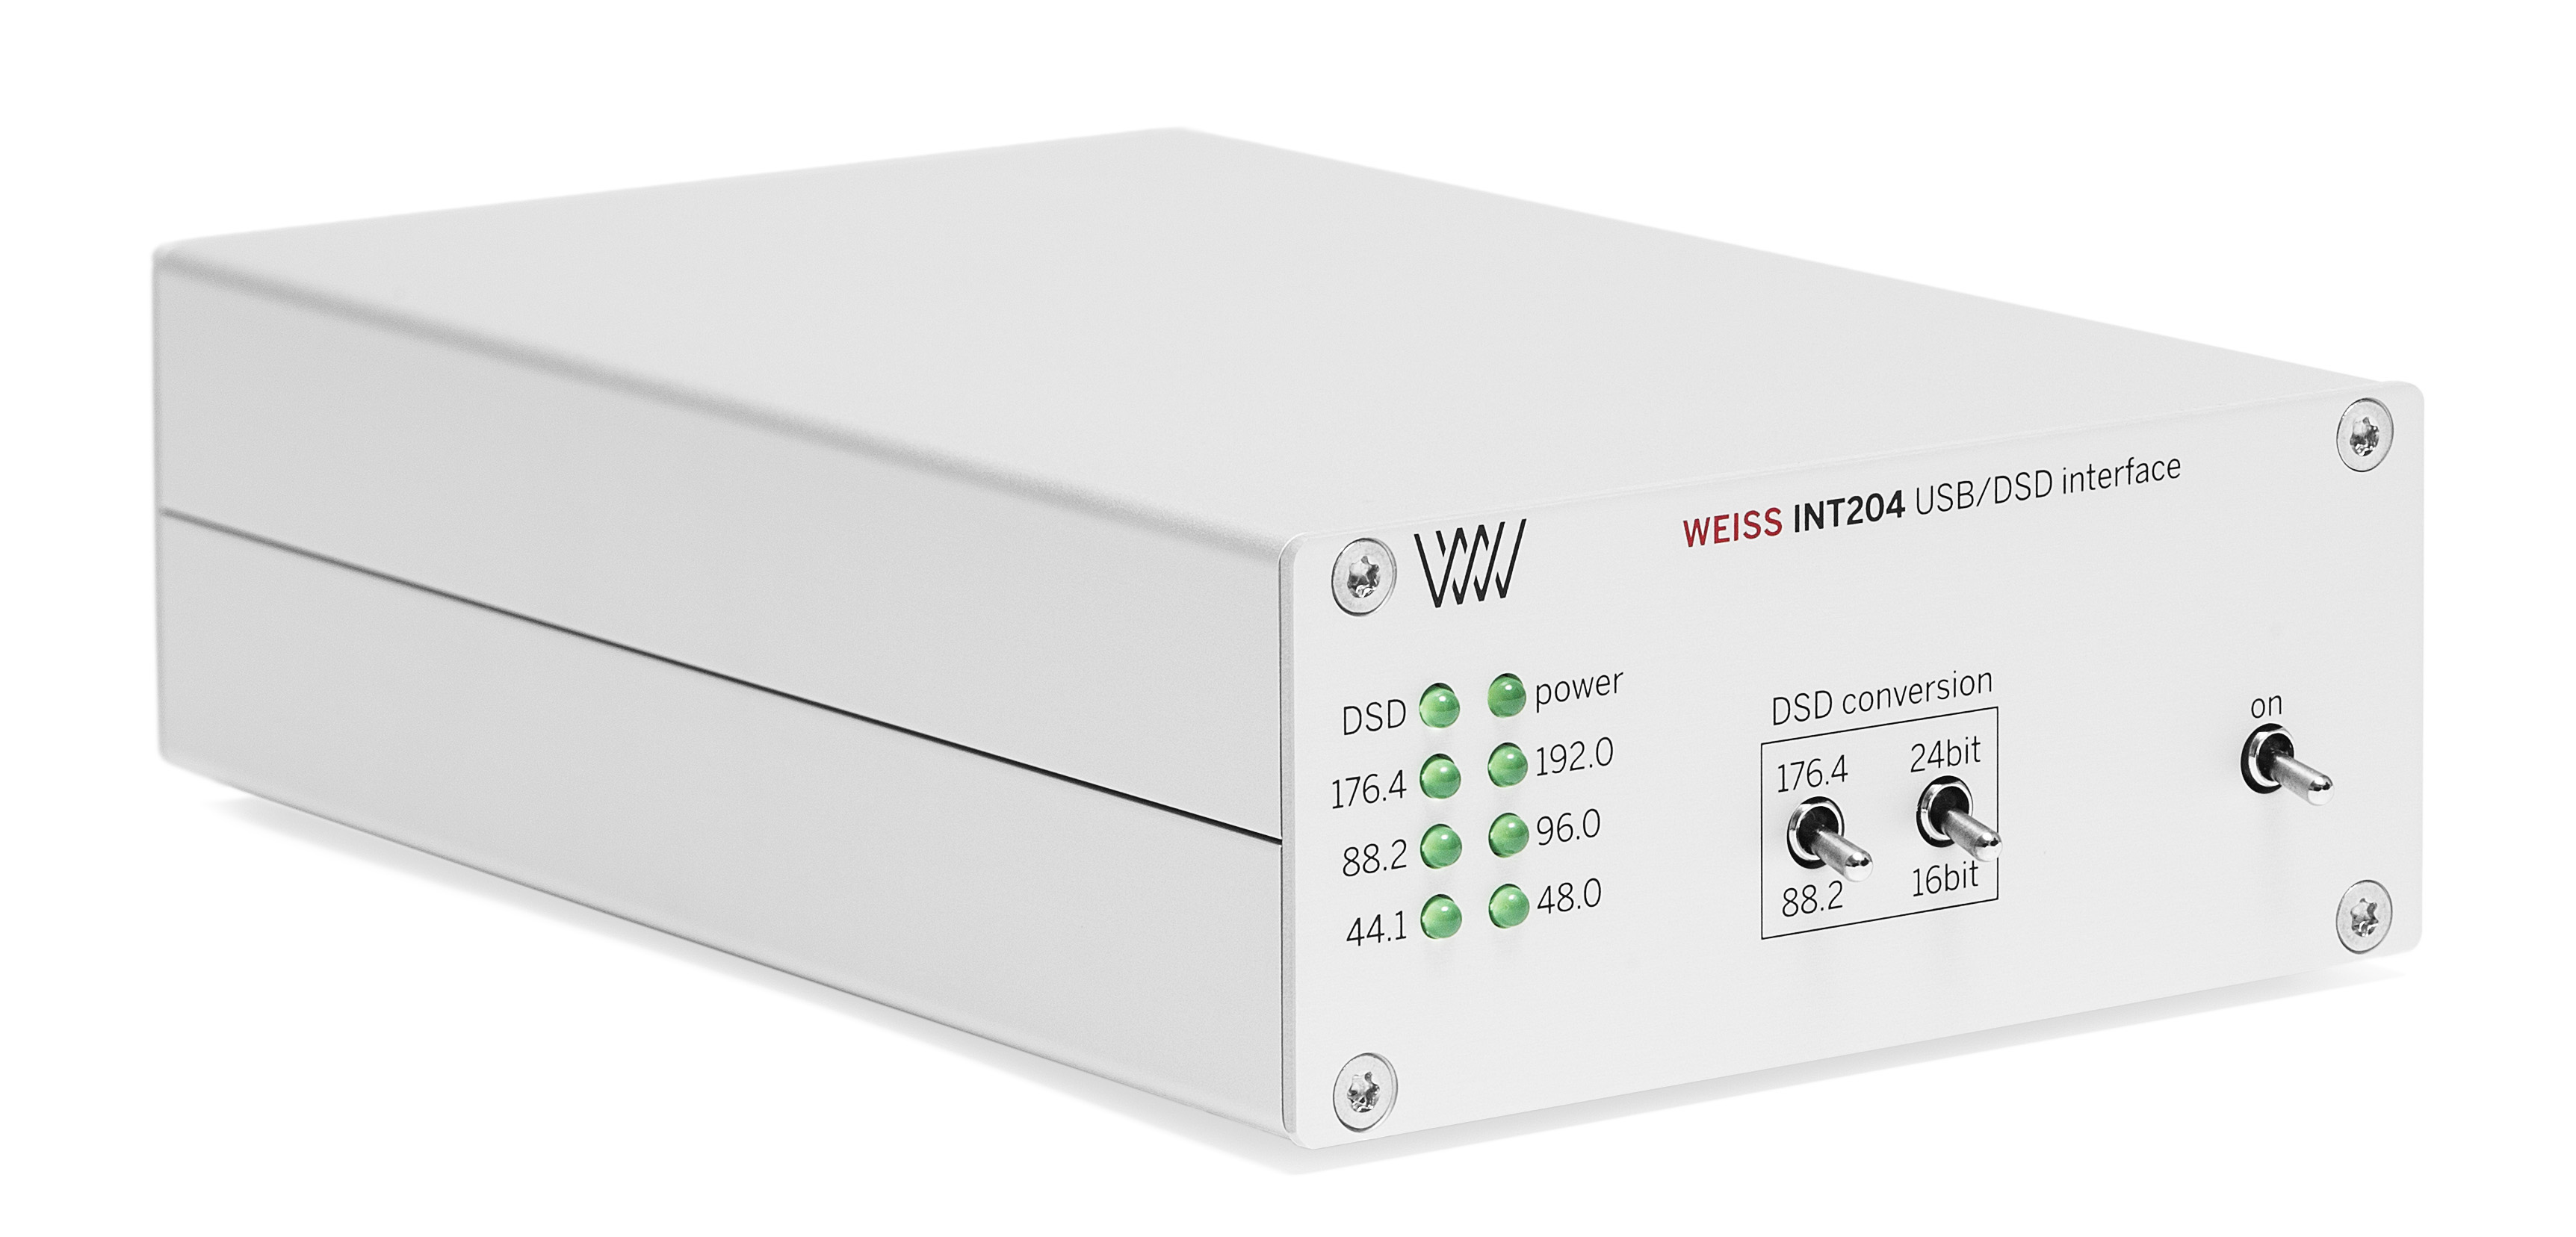 Weiss INT204 USB / DSD